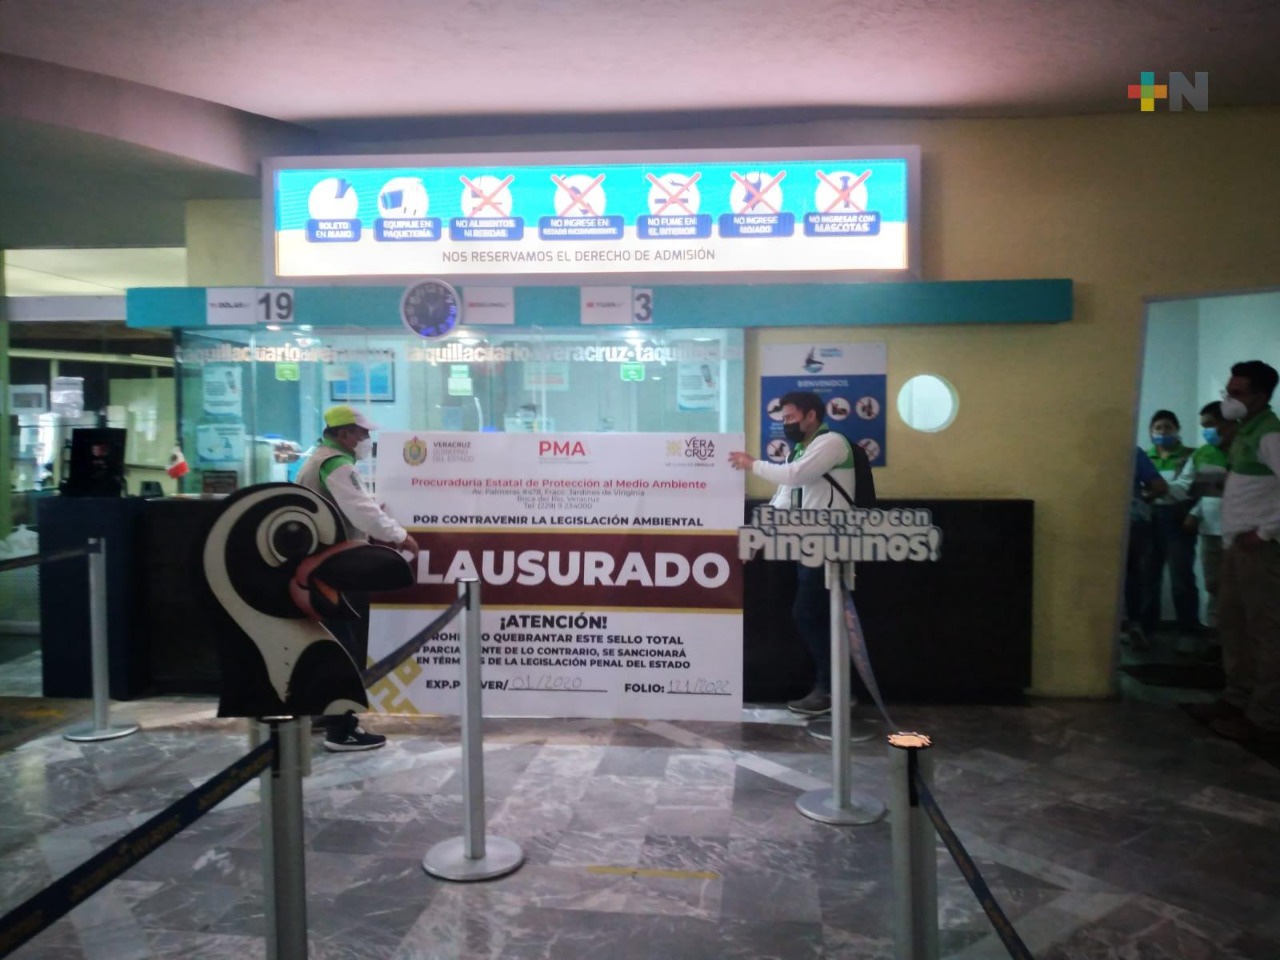 Extinguen fideicomiso del Acuario de Veracruz, la PMA asume control y operatividad